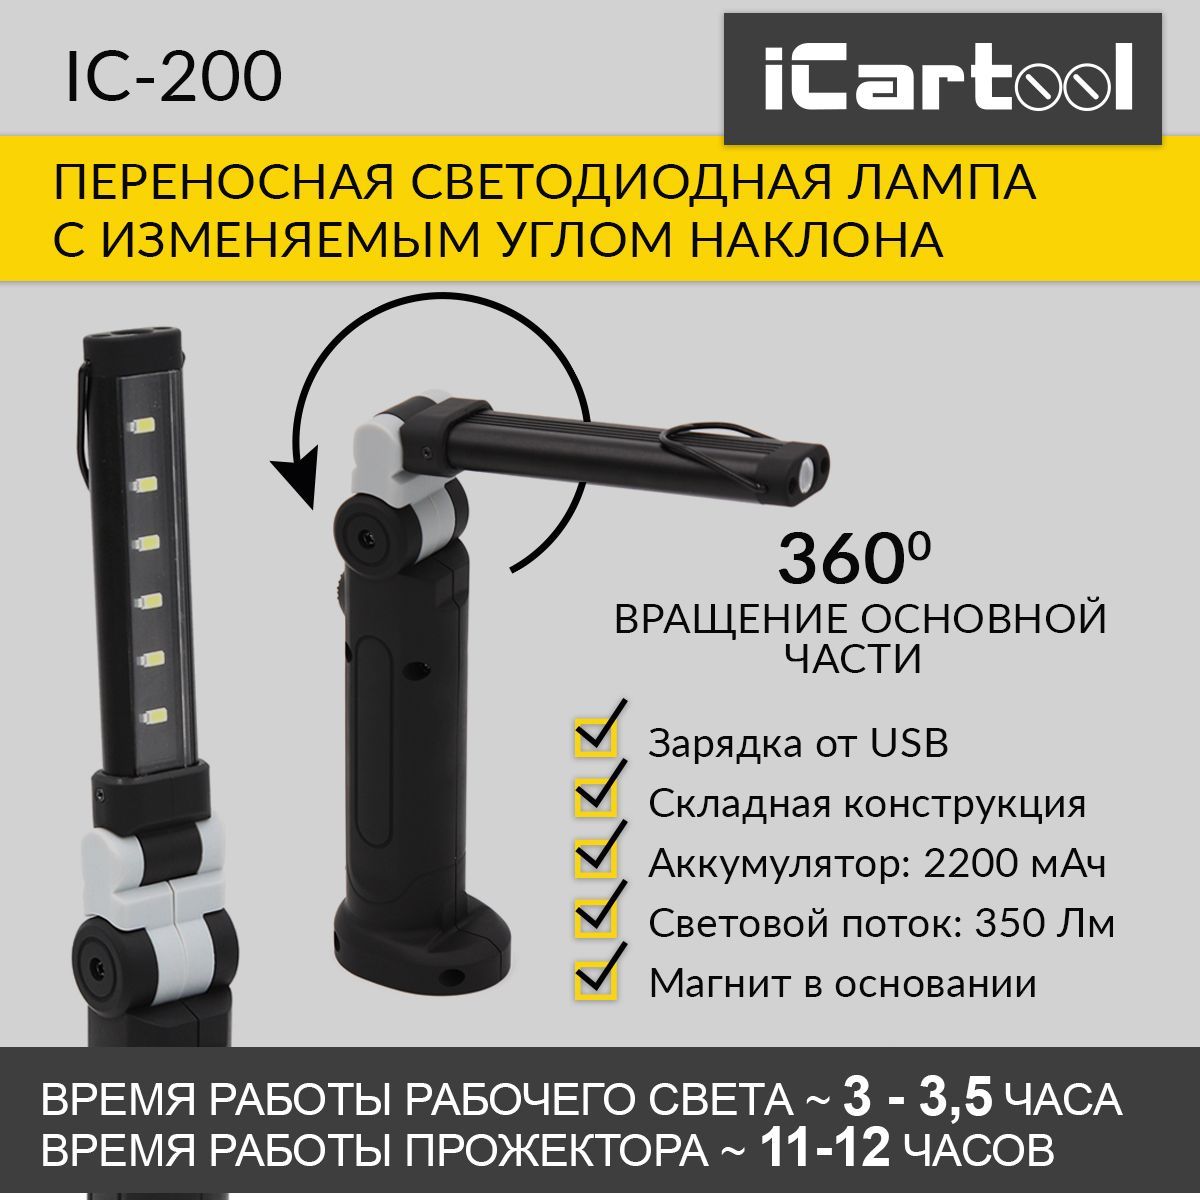 Переносная светодиодная лампа с изменяемым углом наклона iCartool IC-200